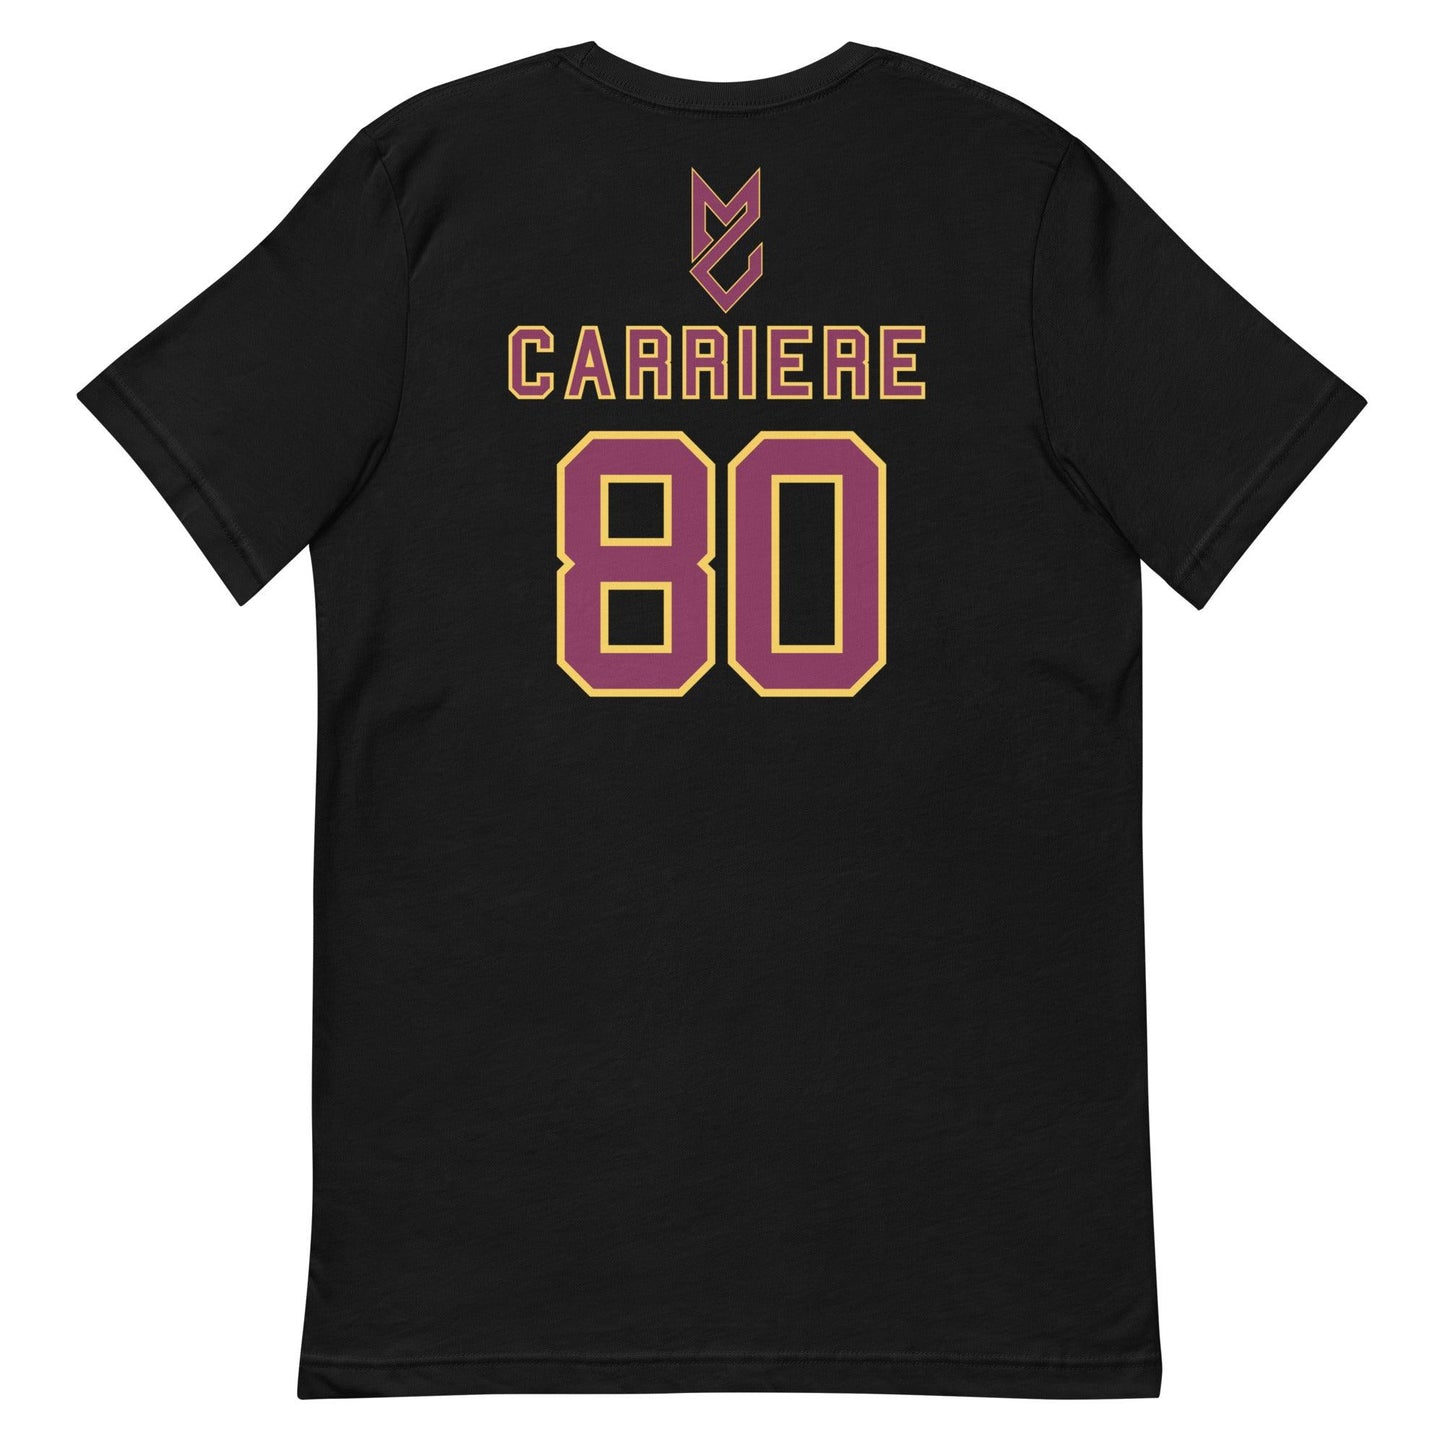 Matteo Carriere "Jersey" t-shirt - Fan Arch